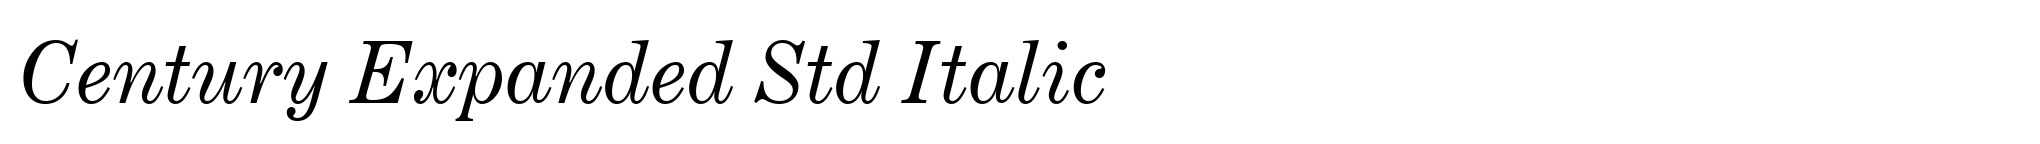 Century Expanded Std Italic image